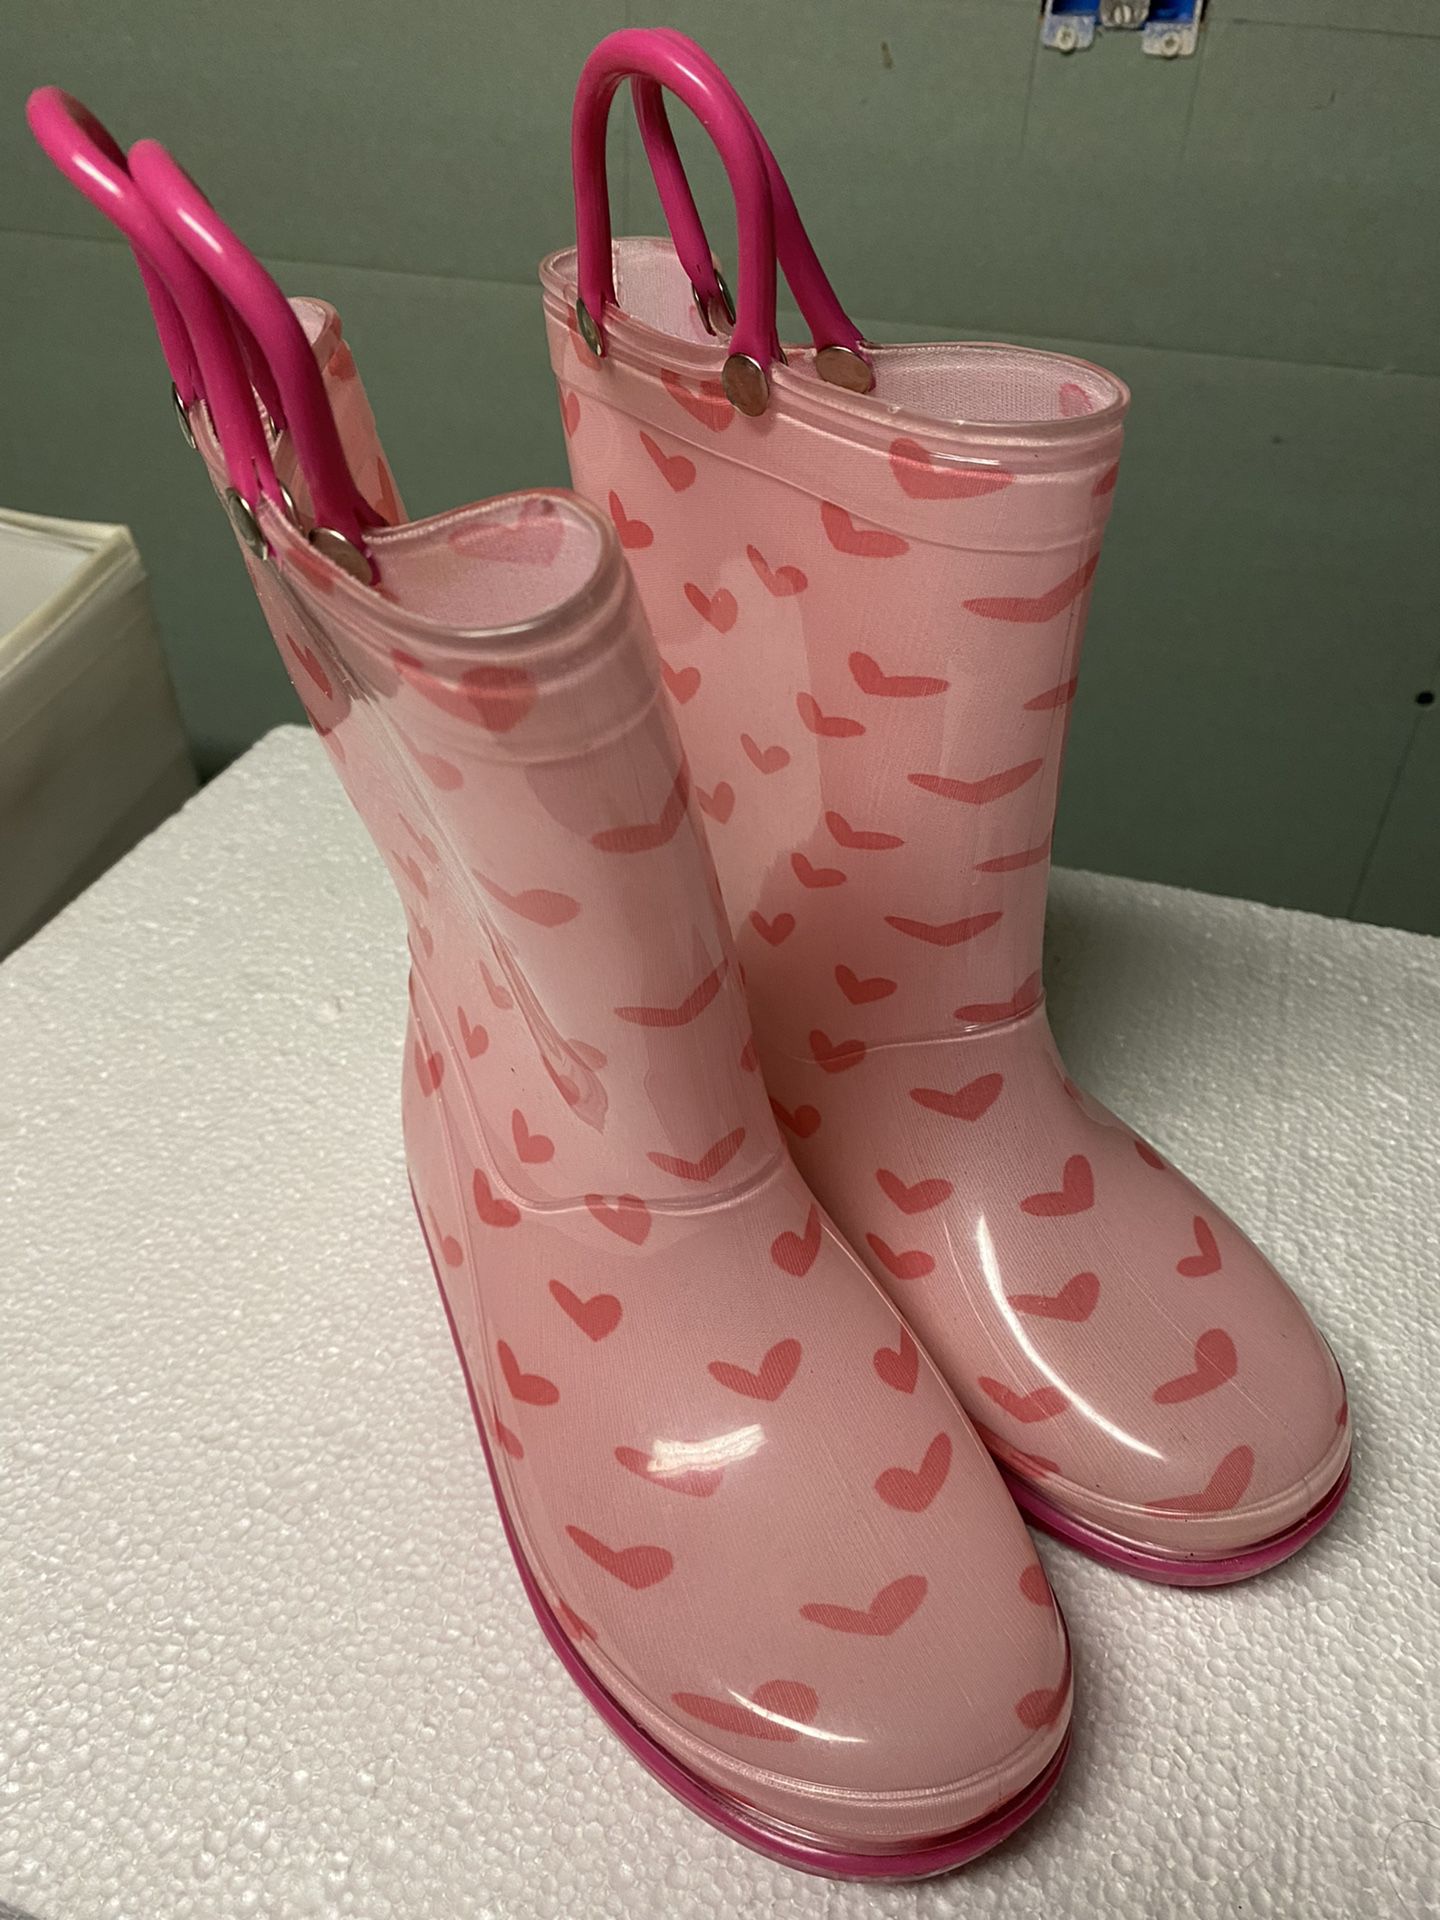 Girls Size 1 Rain Boots